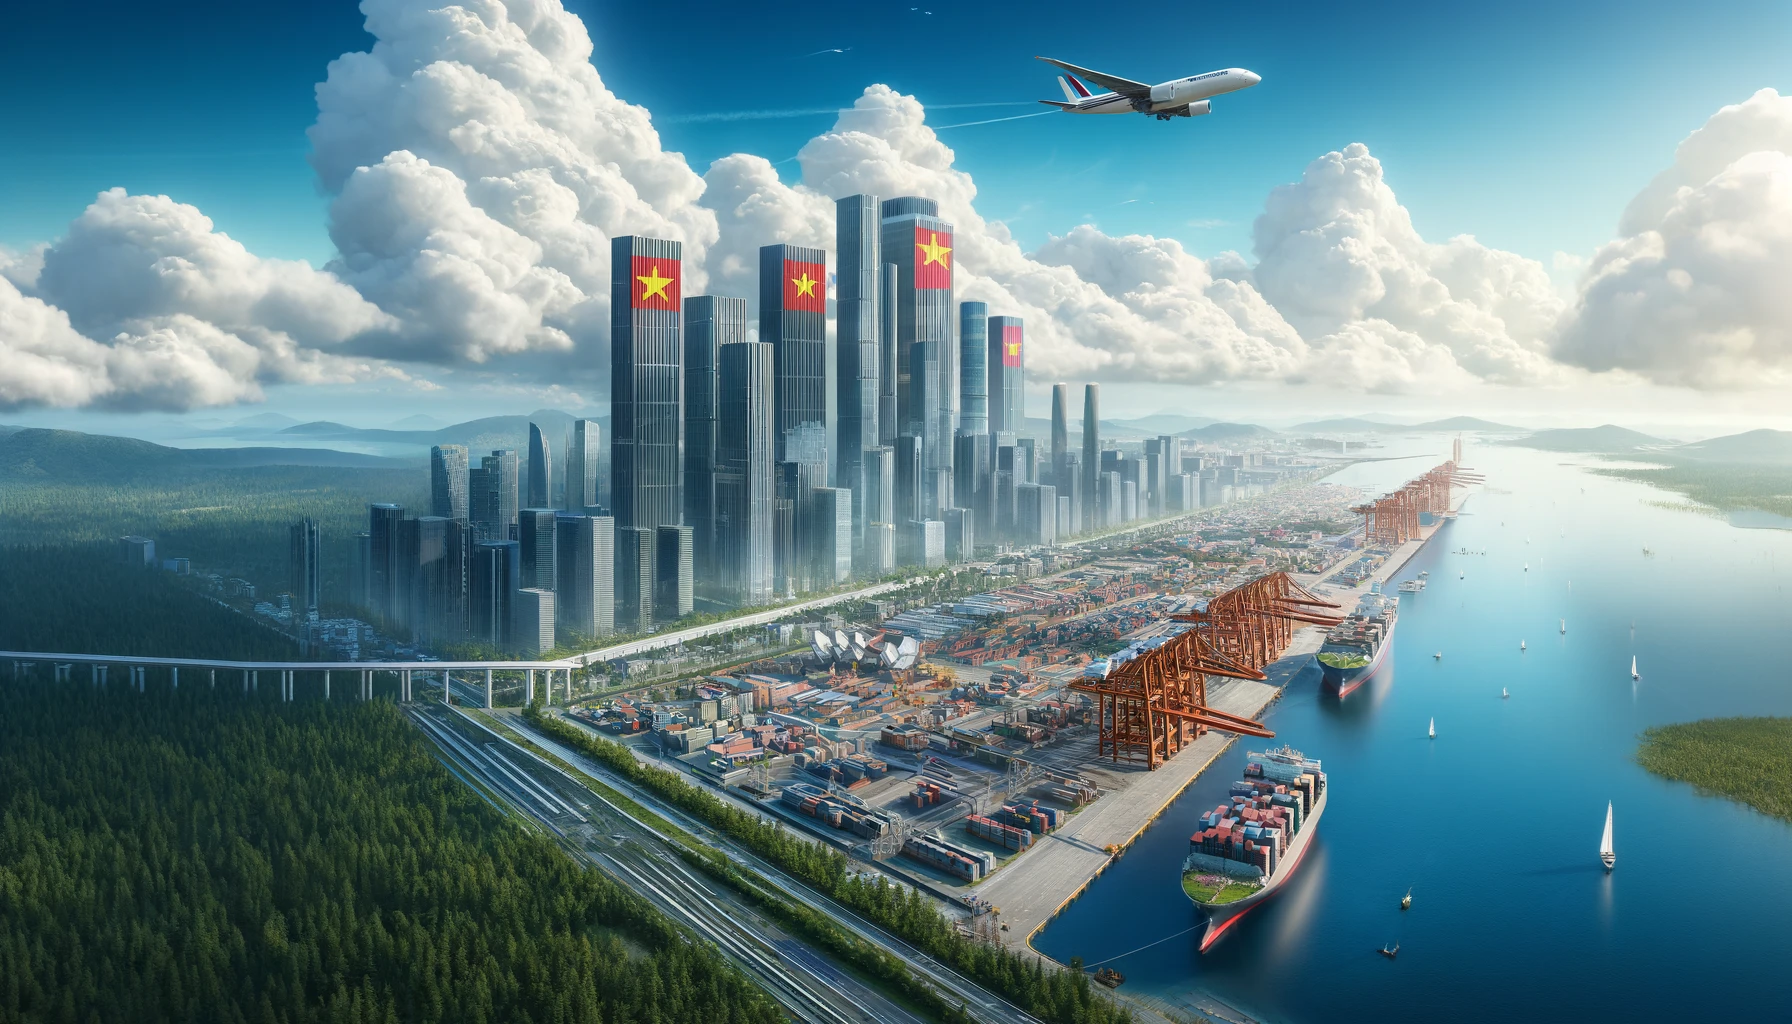 Siêu cảng quốc tế trị giá 129.000 tỷ, rộng 571 ha, là